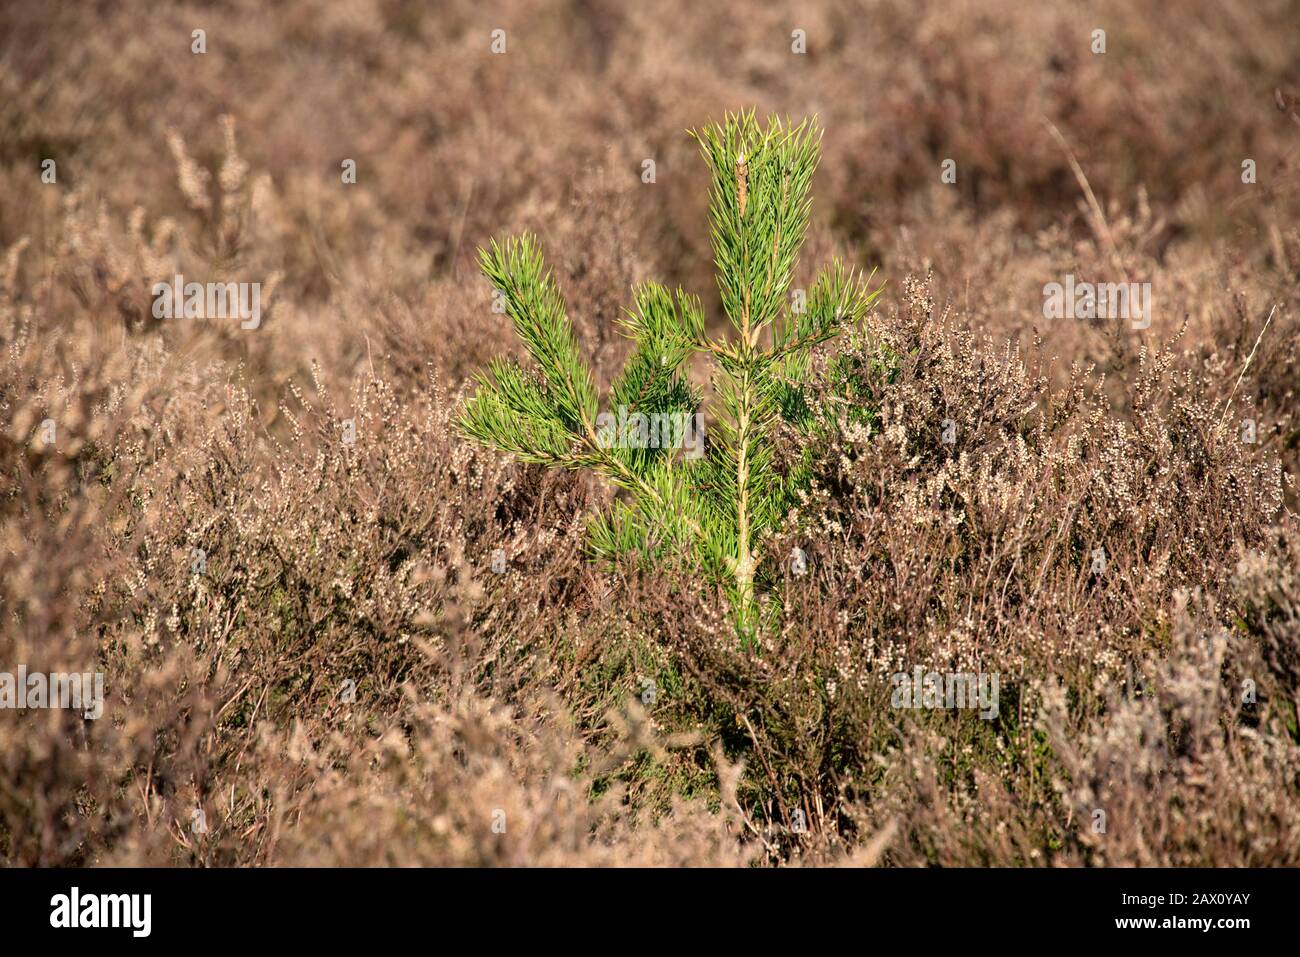 Le prélèvement d'un arbre de pin écossais (Pinus sylvestris) qui pousse parmi la bruyère d'hiver sur la bruyère du Berkshire dans la regrowth gérée, Berkshire, février Banque D'Images